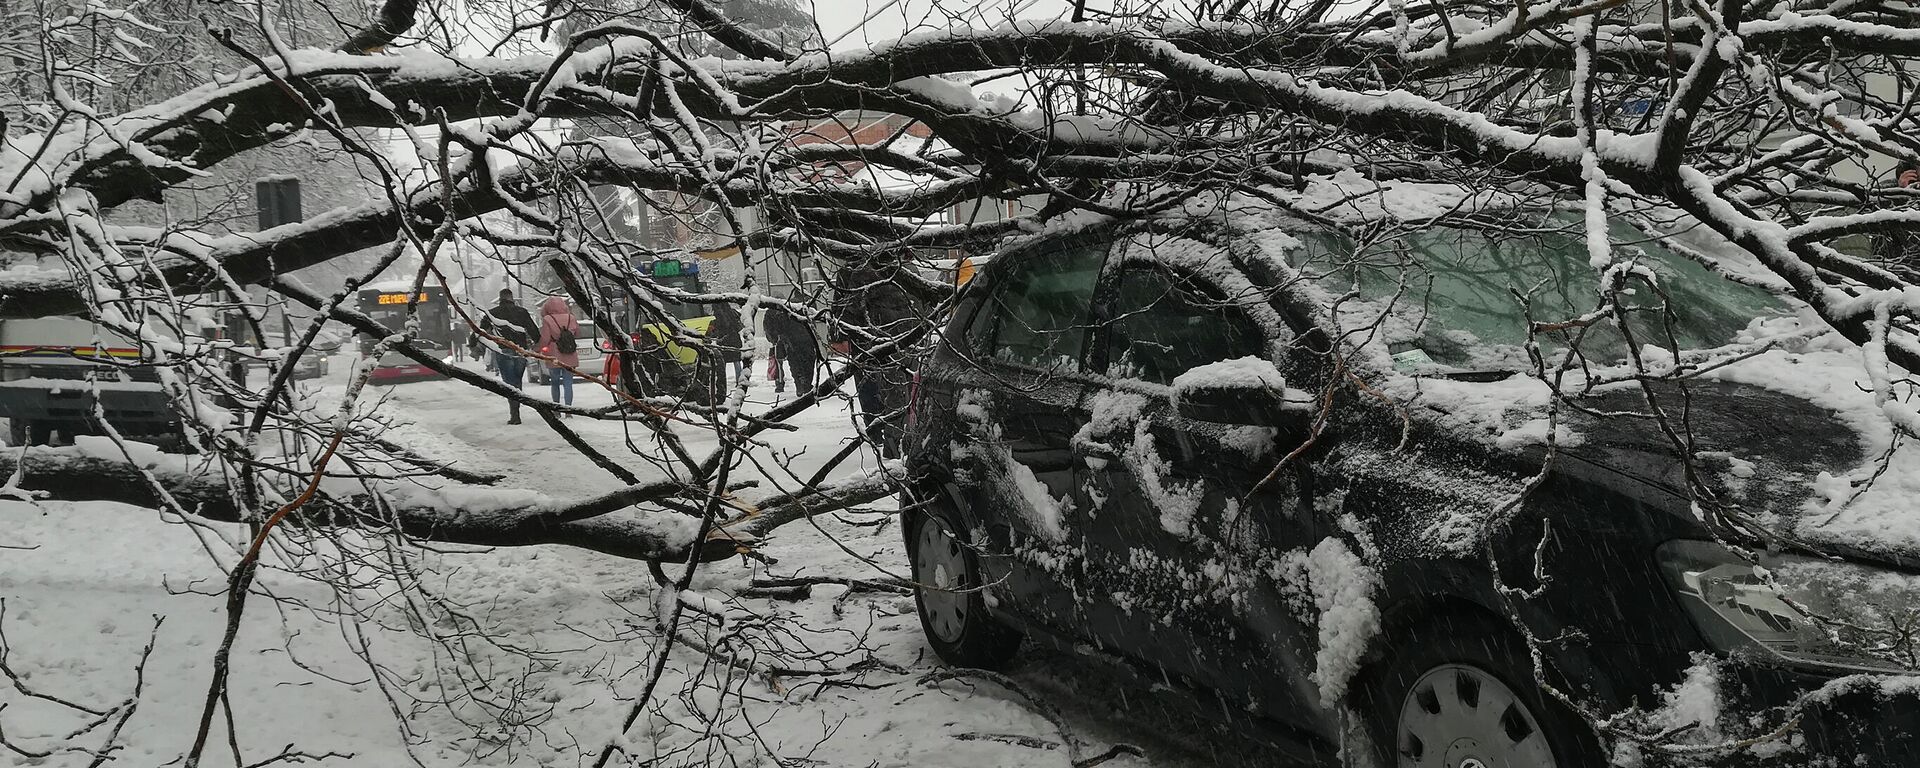 Дрво у Београду пало под тежином снега - Sputnik Србија, 1920, 12.12.2021